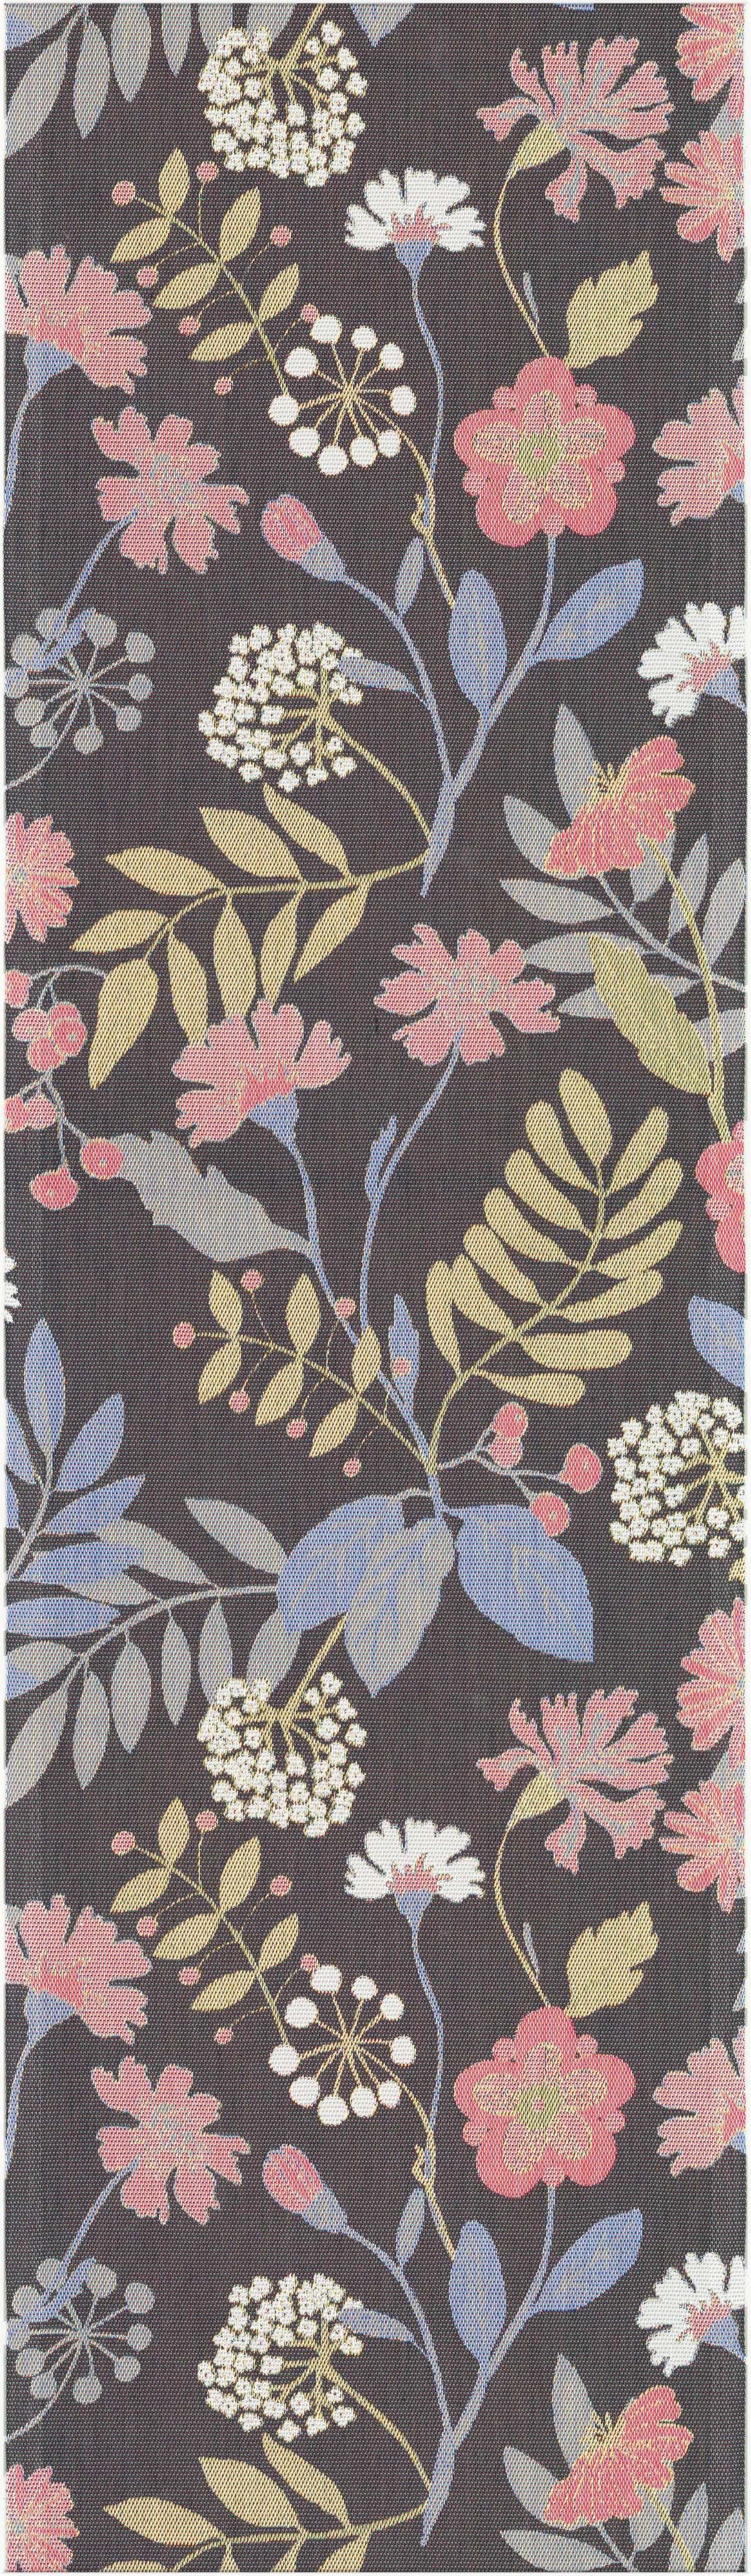 Ekelund Tischläufer Tischläufer Flower Season 35x120 cm, Pixel gewebt (6-farbig)